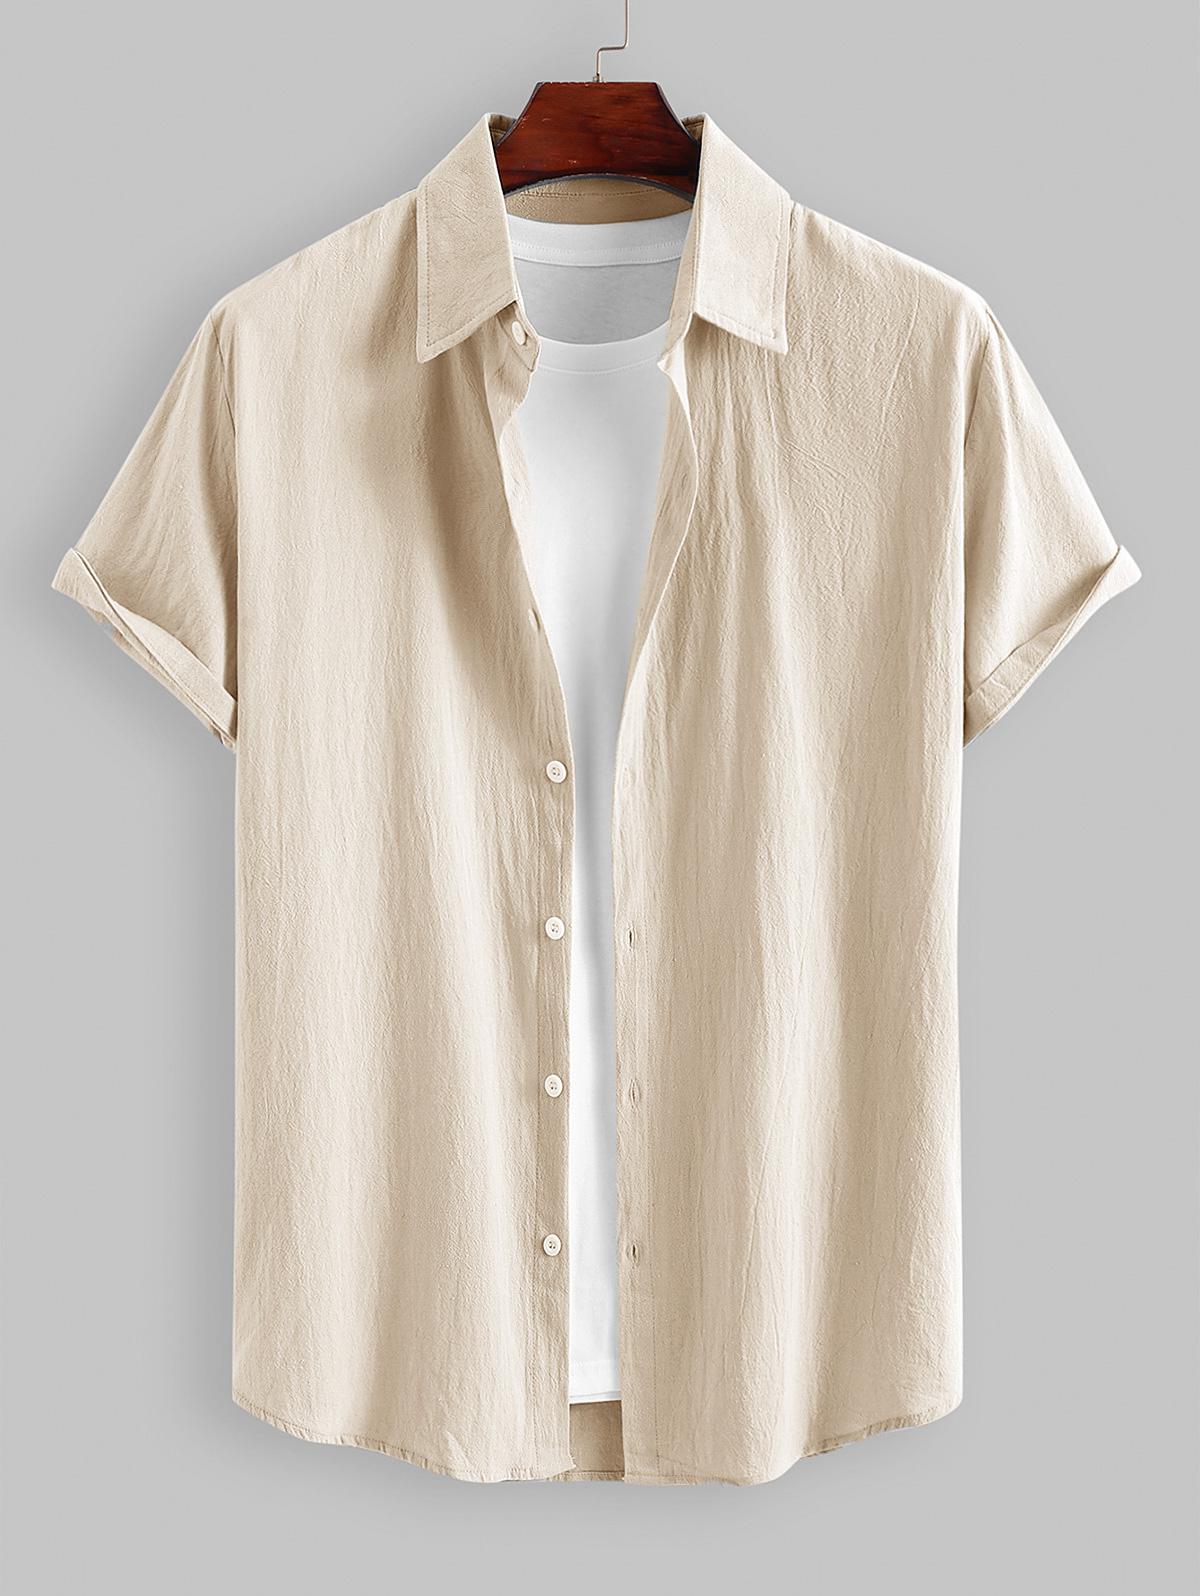 ZAFUL Men's Cotton and Linen Textured Asymmetric Hem Short Sleeves Shirt Xl Light coffee